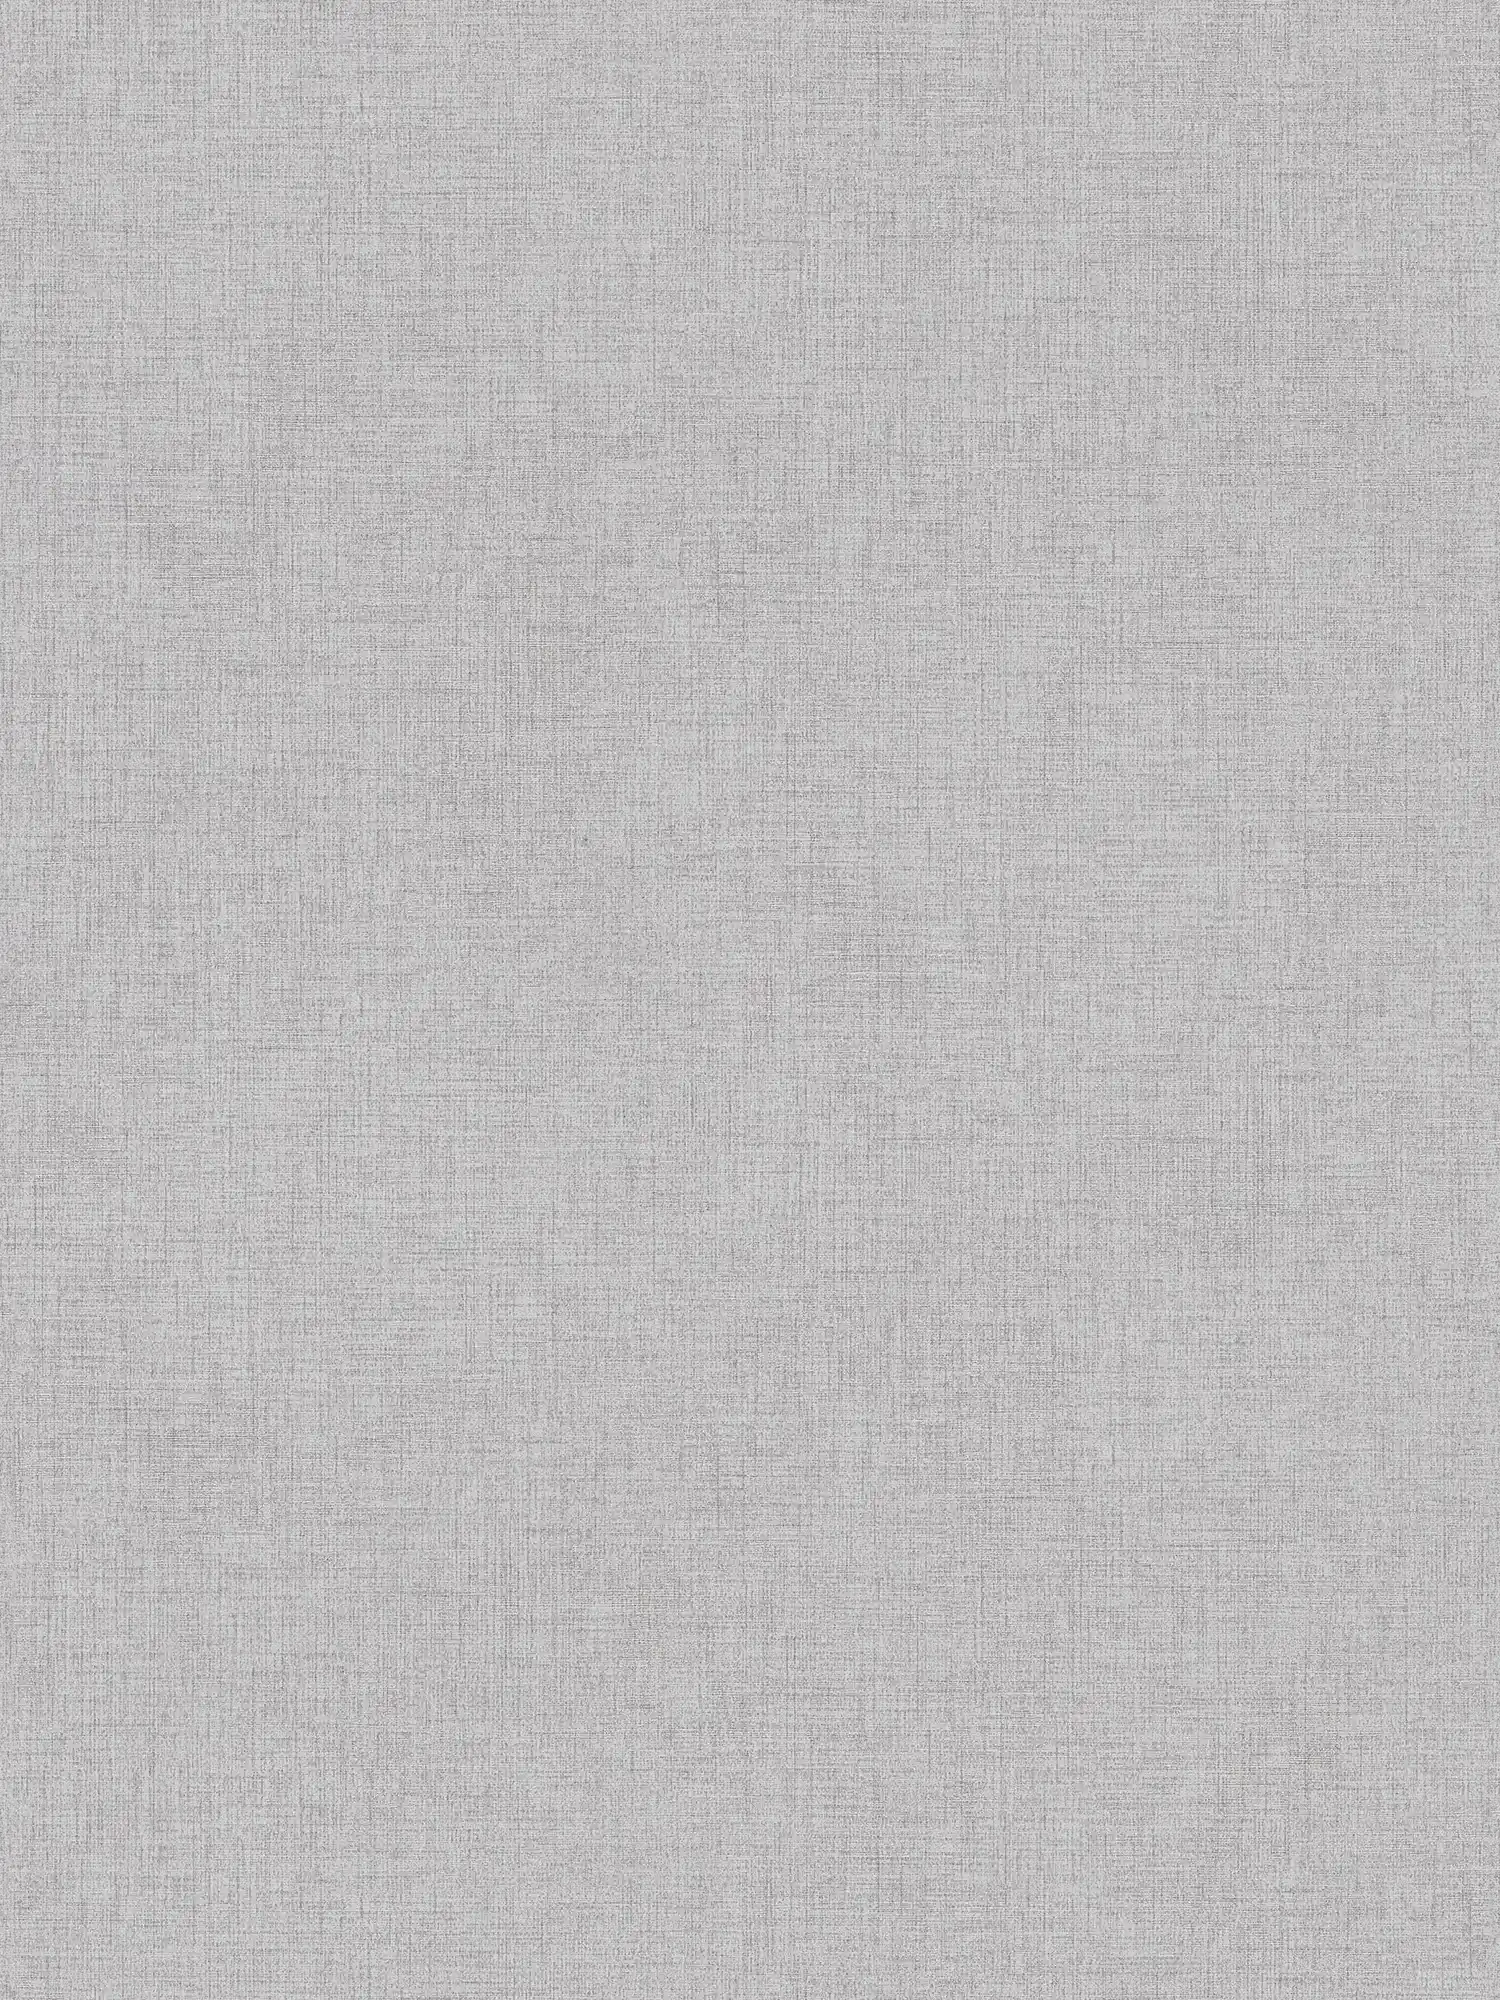 Linen look wallpaper plain, neutral - grey
